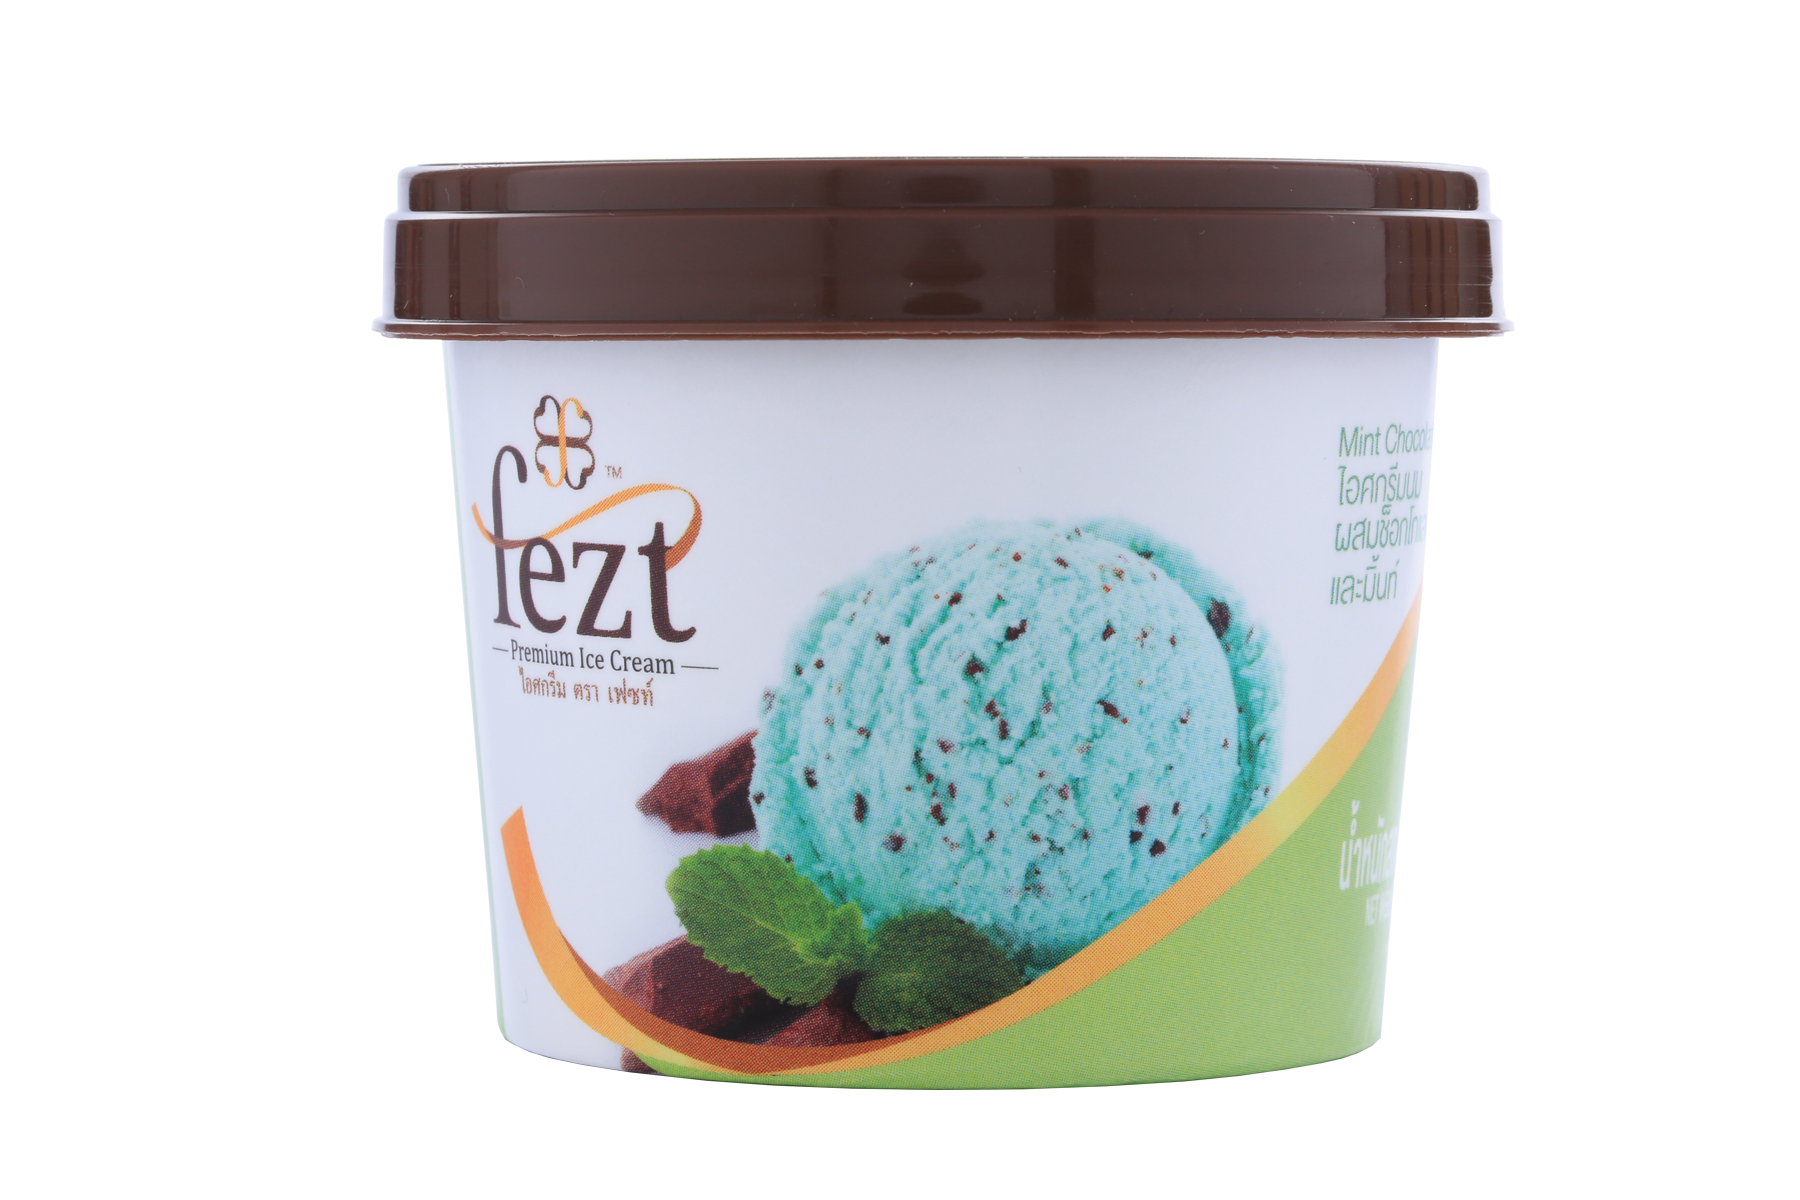 เฟซท์ ไอศกรีมพรีเมี่ยม รสมิ้นท์  ช็อคโกแลตชิพ  (Fezt Ice Cream) แพ็คละ 12 ถ้วย